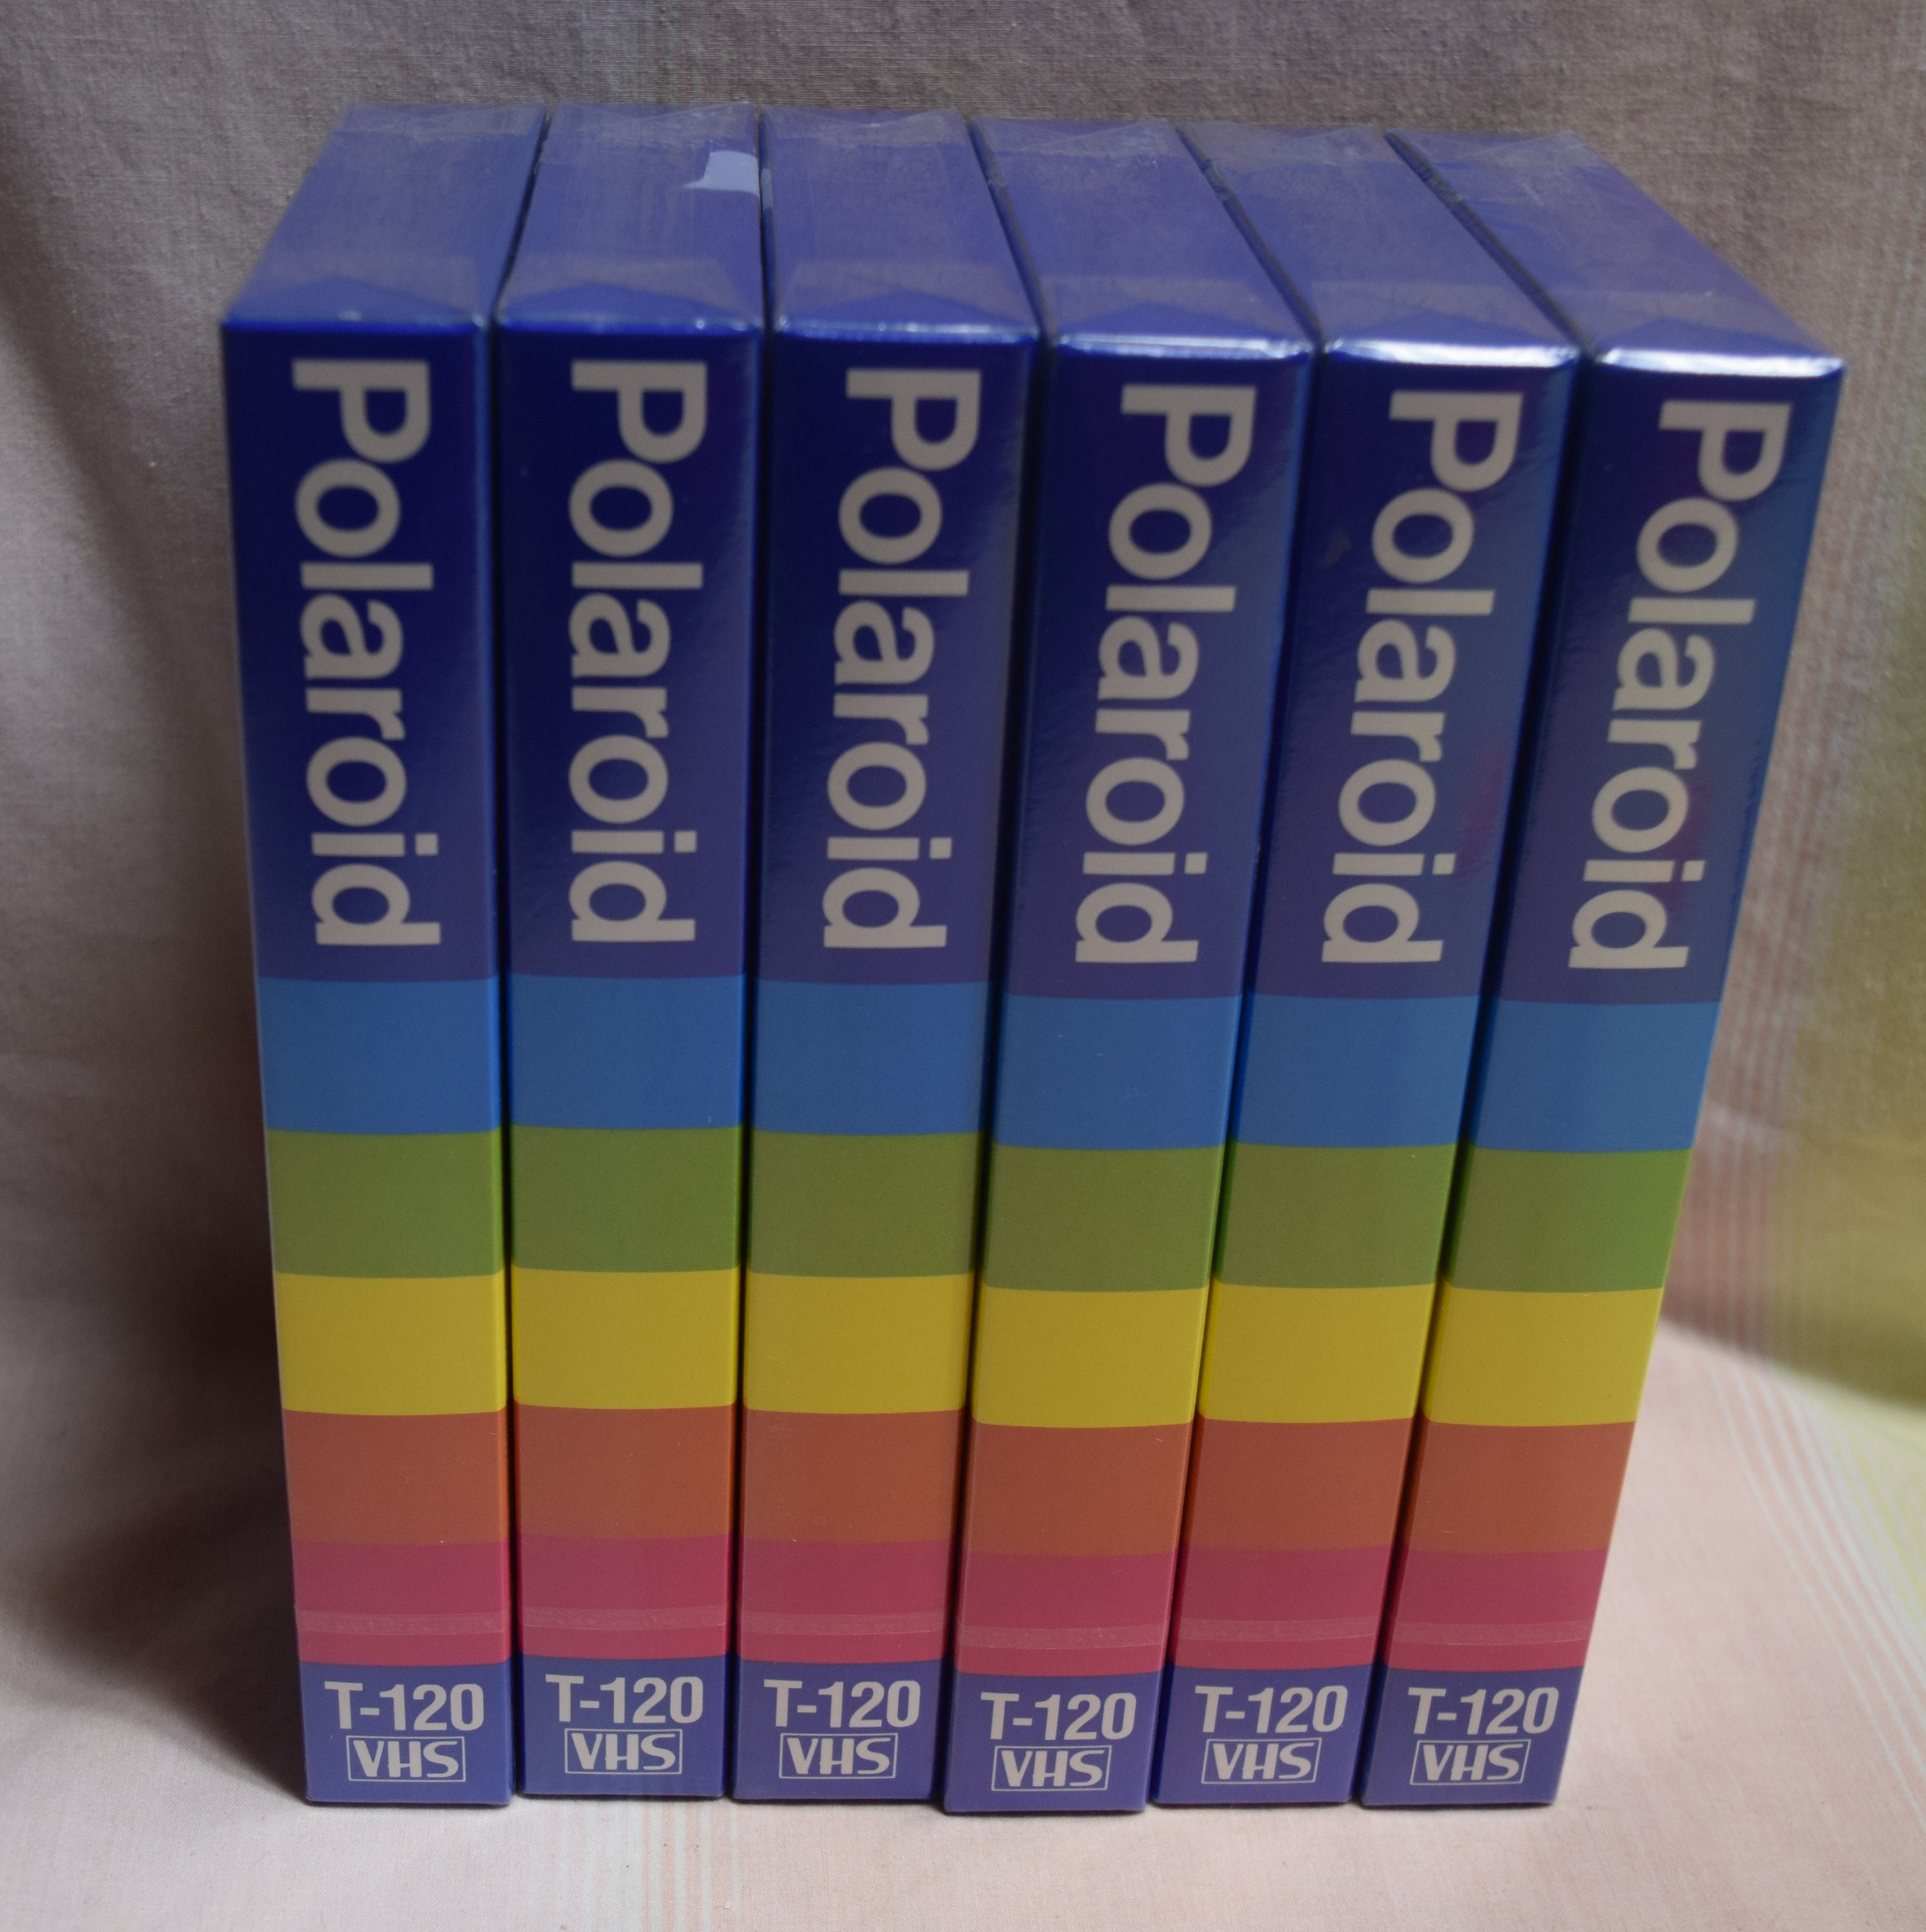 4 New Polaroid Supercolor Video Cassette T-120 3 Pack Plus 1 